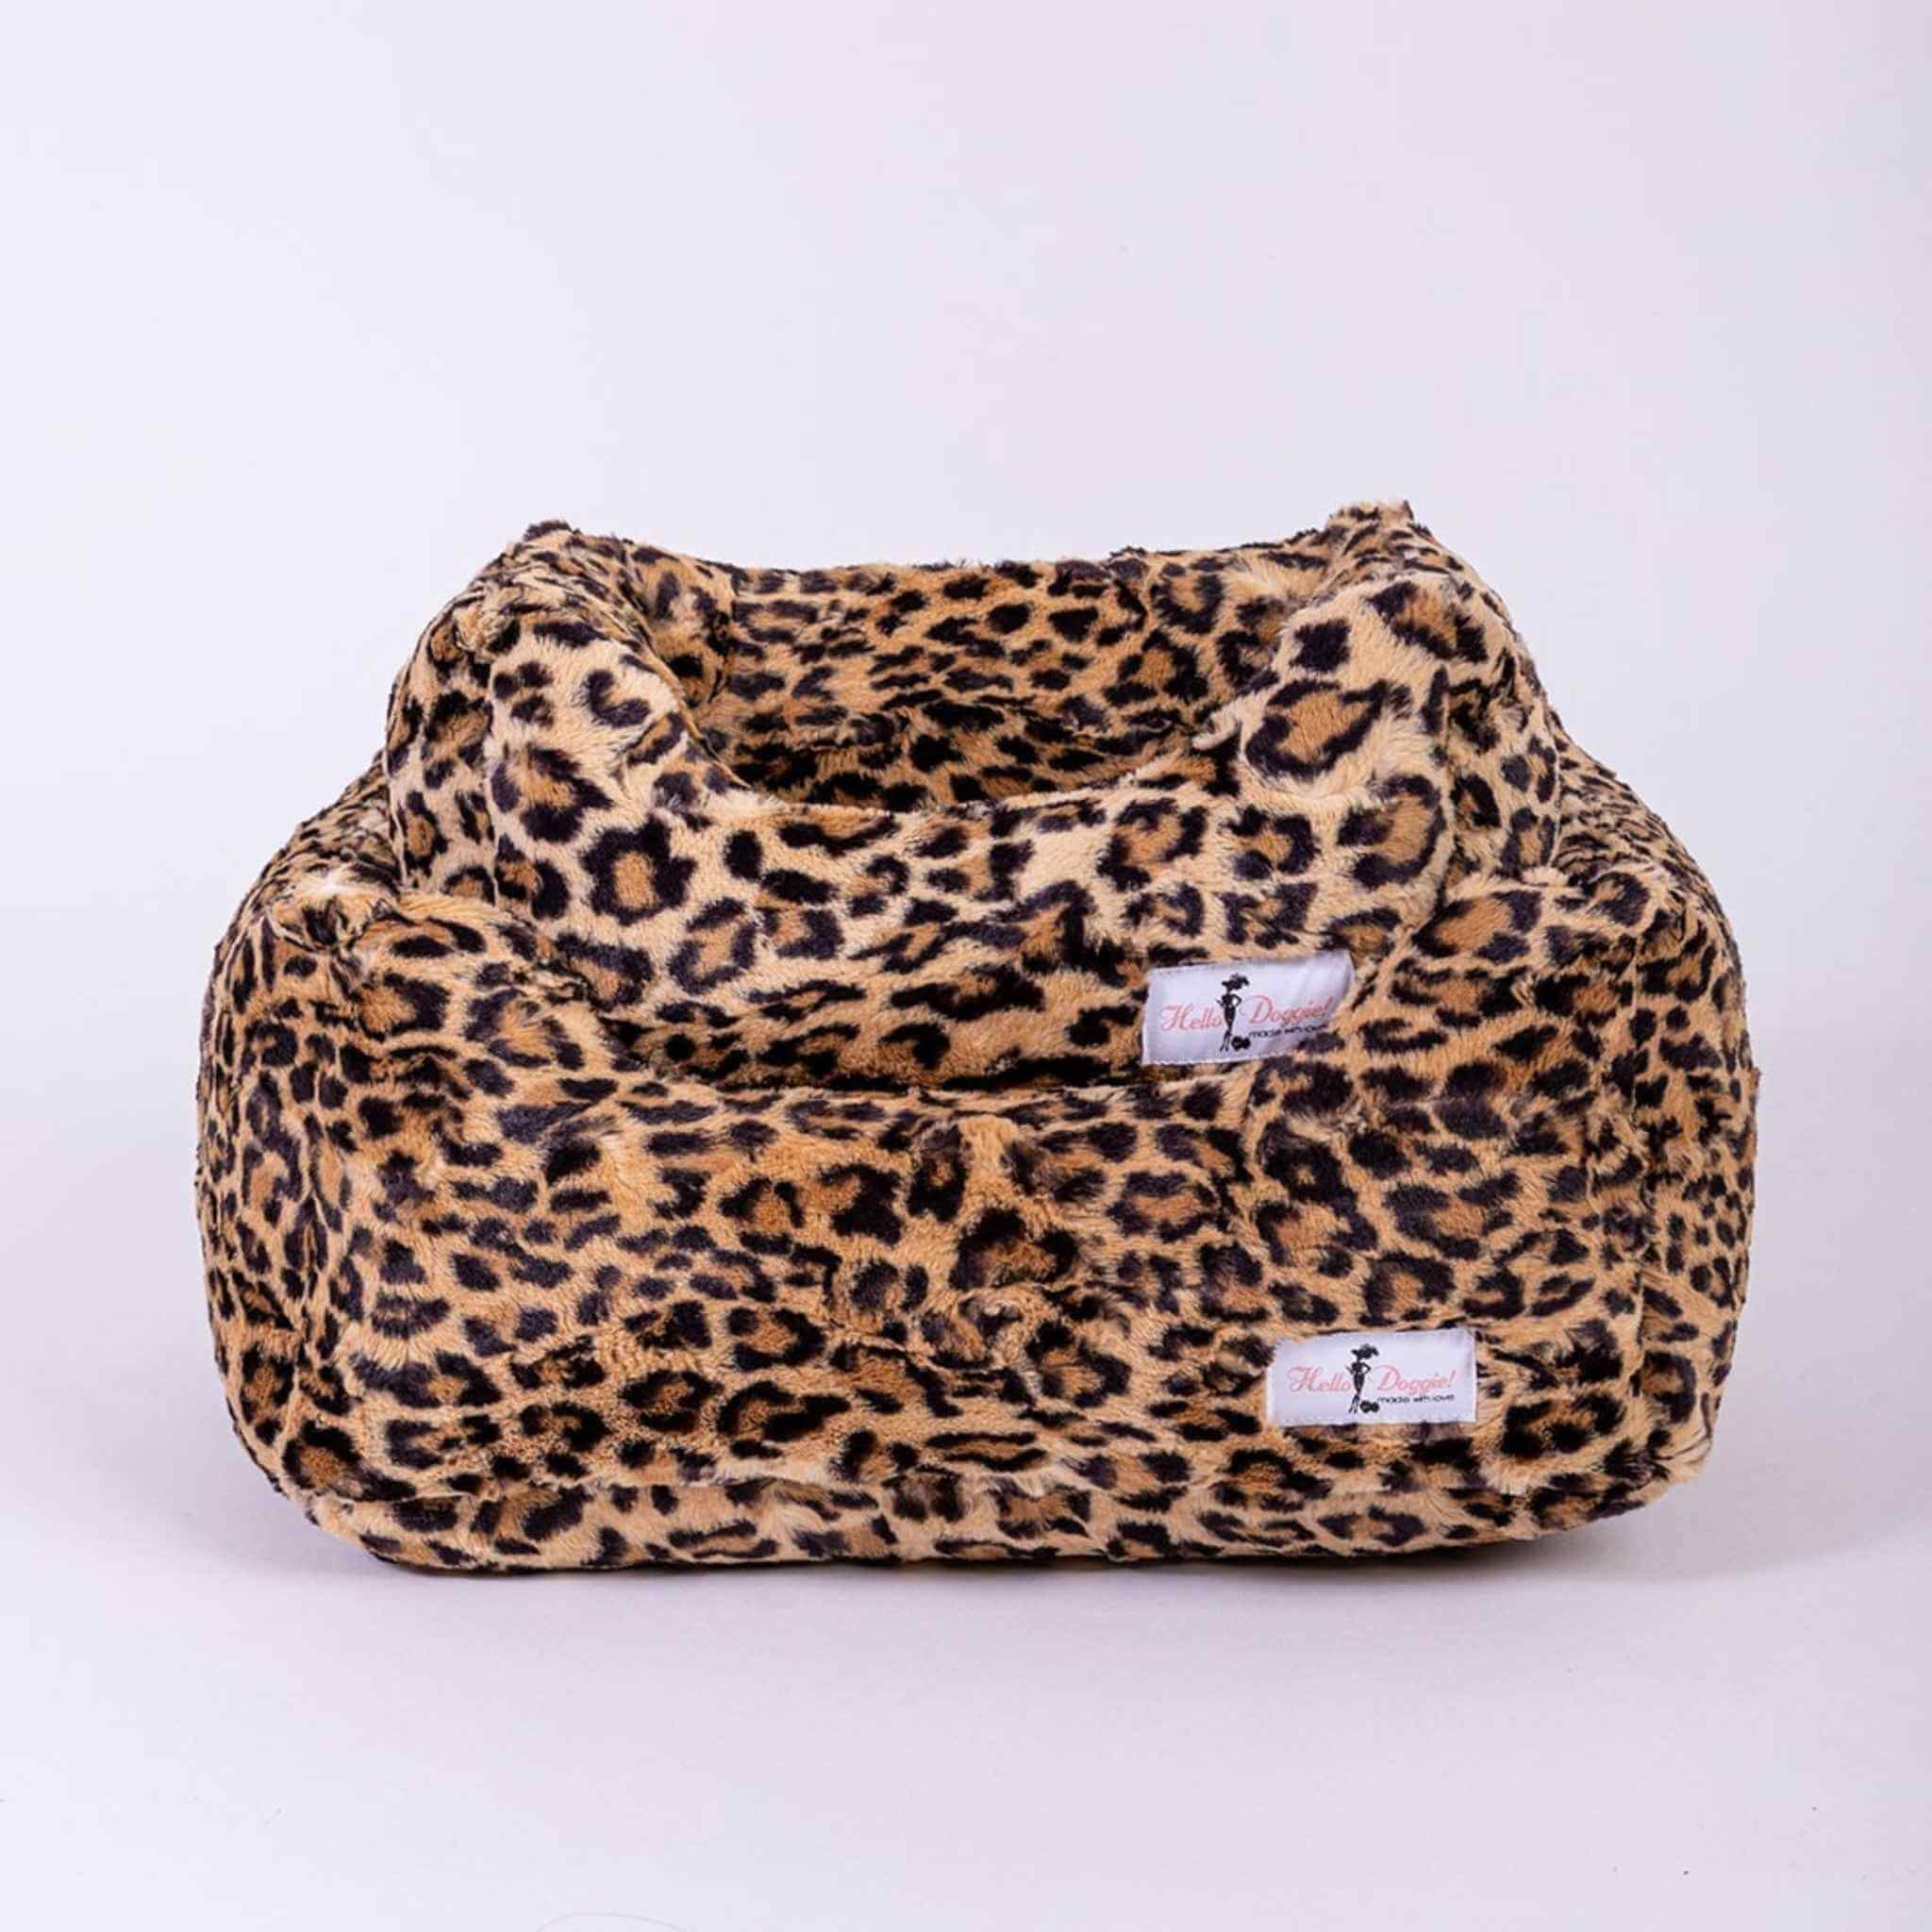 Luxury Velvet, Cheetah Dog Collar